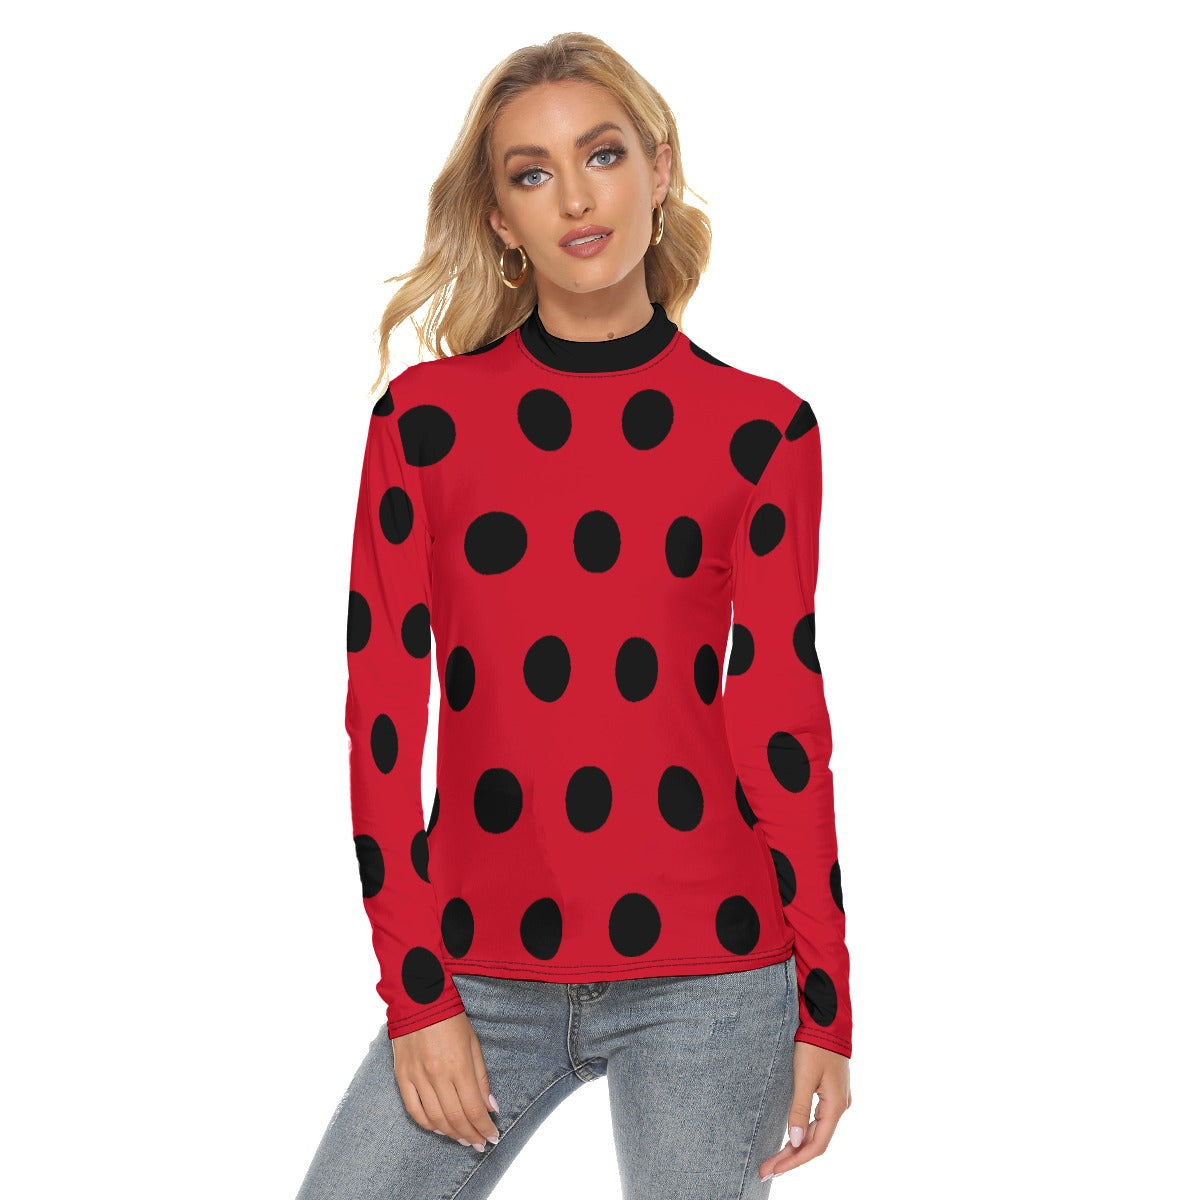 Ladybug Shirt Costume Marinettte